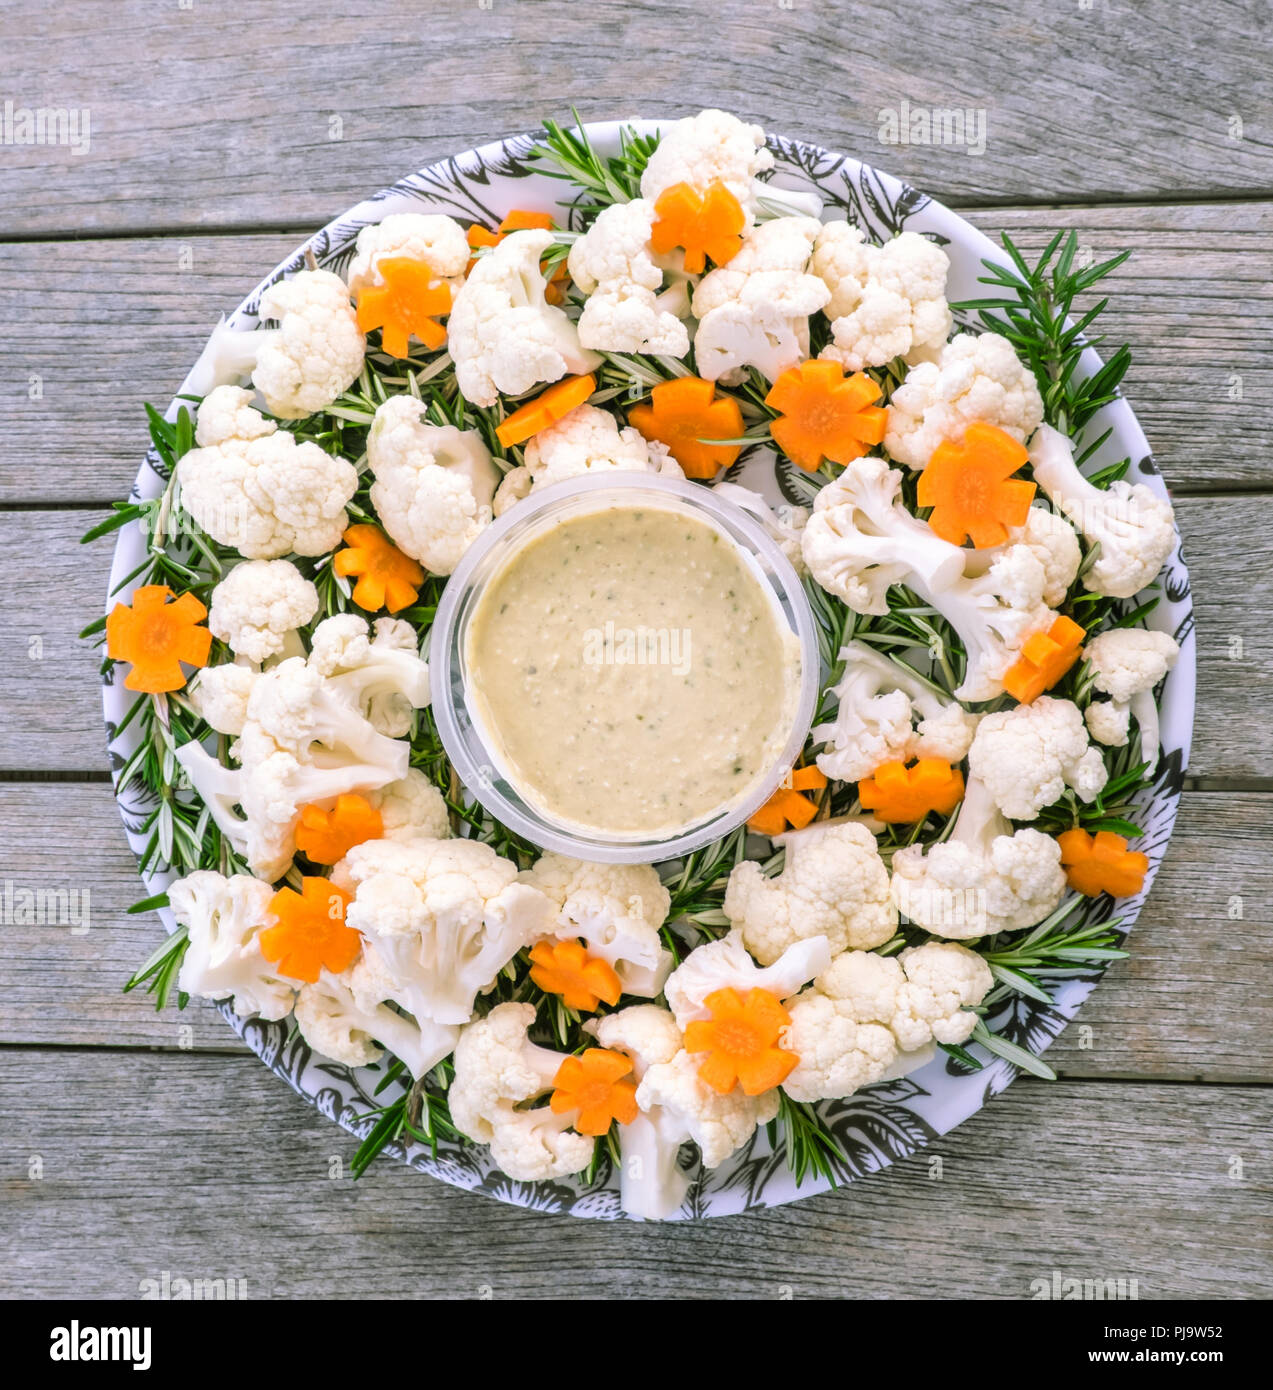 Festive cibo crudo vegano piatto di verdure con hummus dip: cime di cavolfiore, carote tagliate in forme a fiore e rosmarino Foto Stock